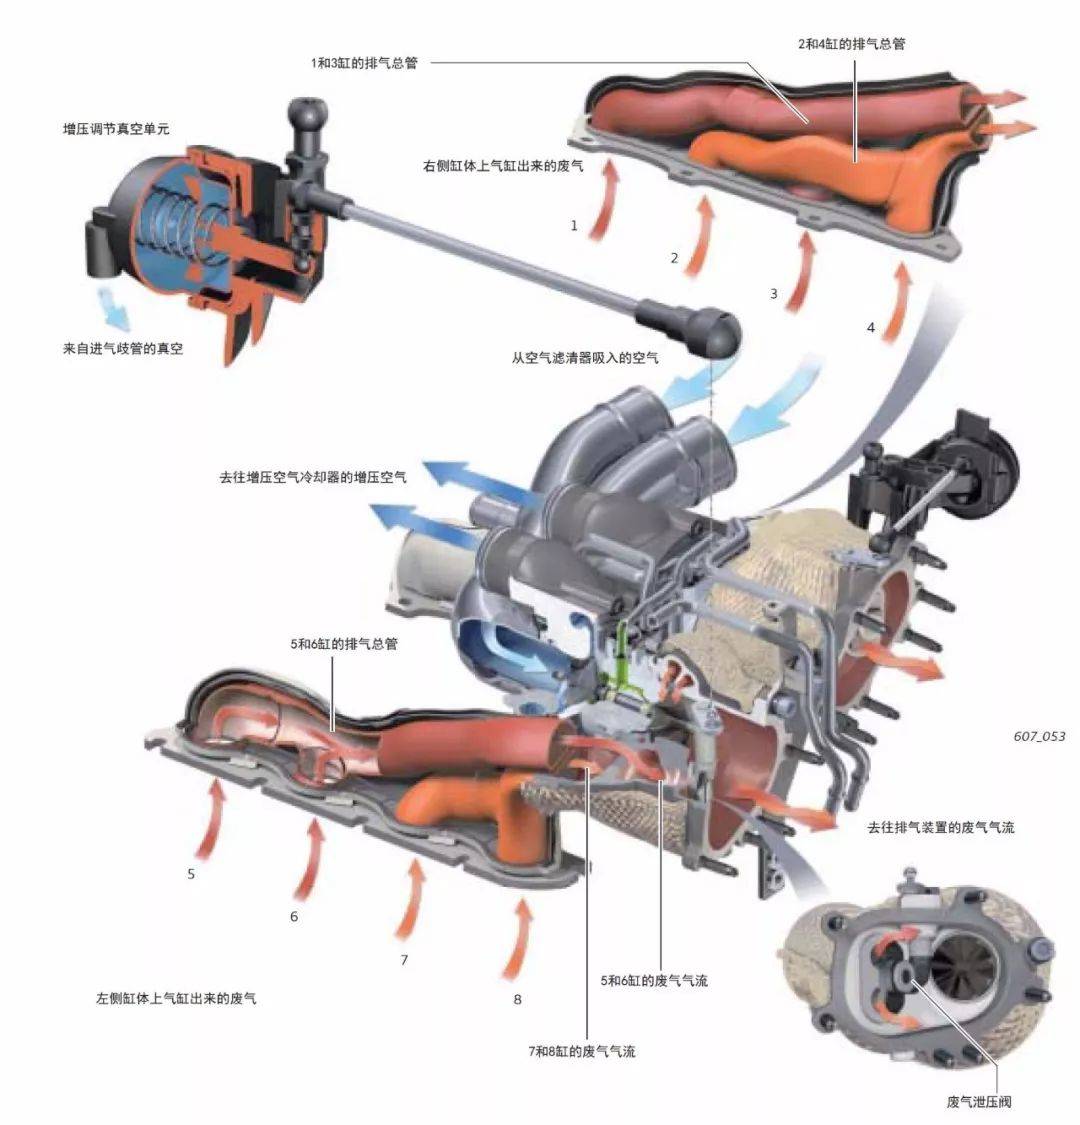 图解奥迪40升v8双涡轮增压发动机技术之空气供给和增压系统